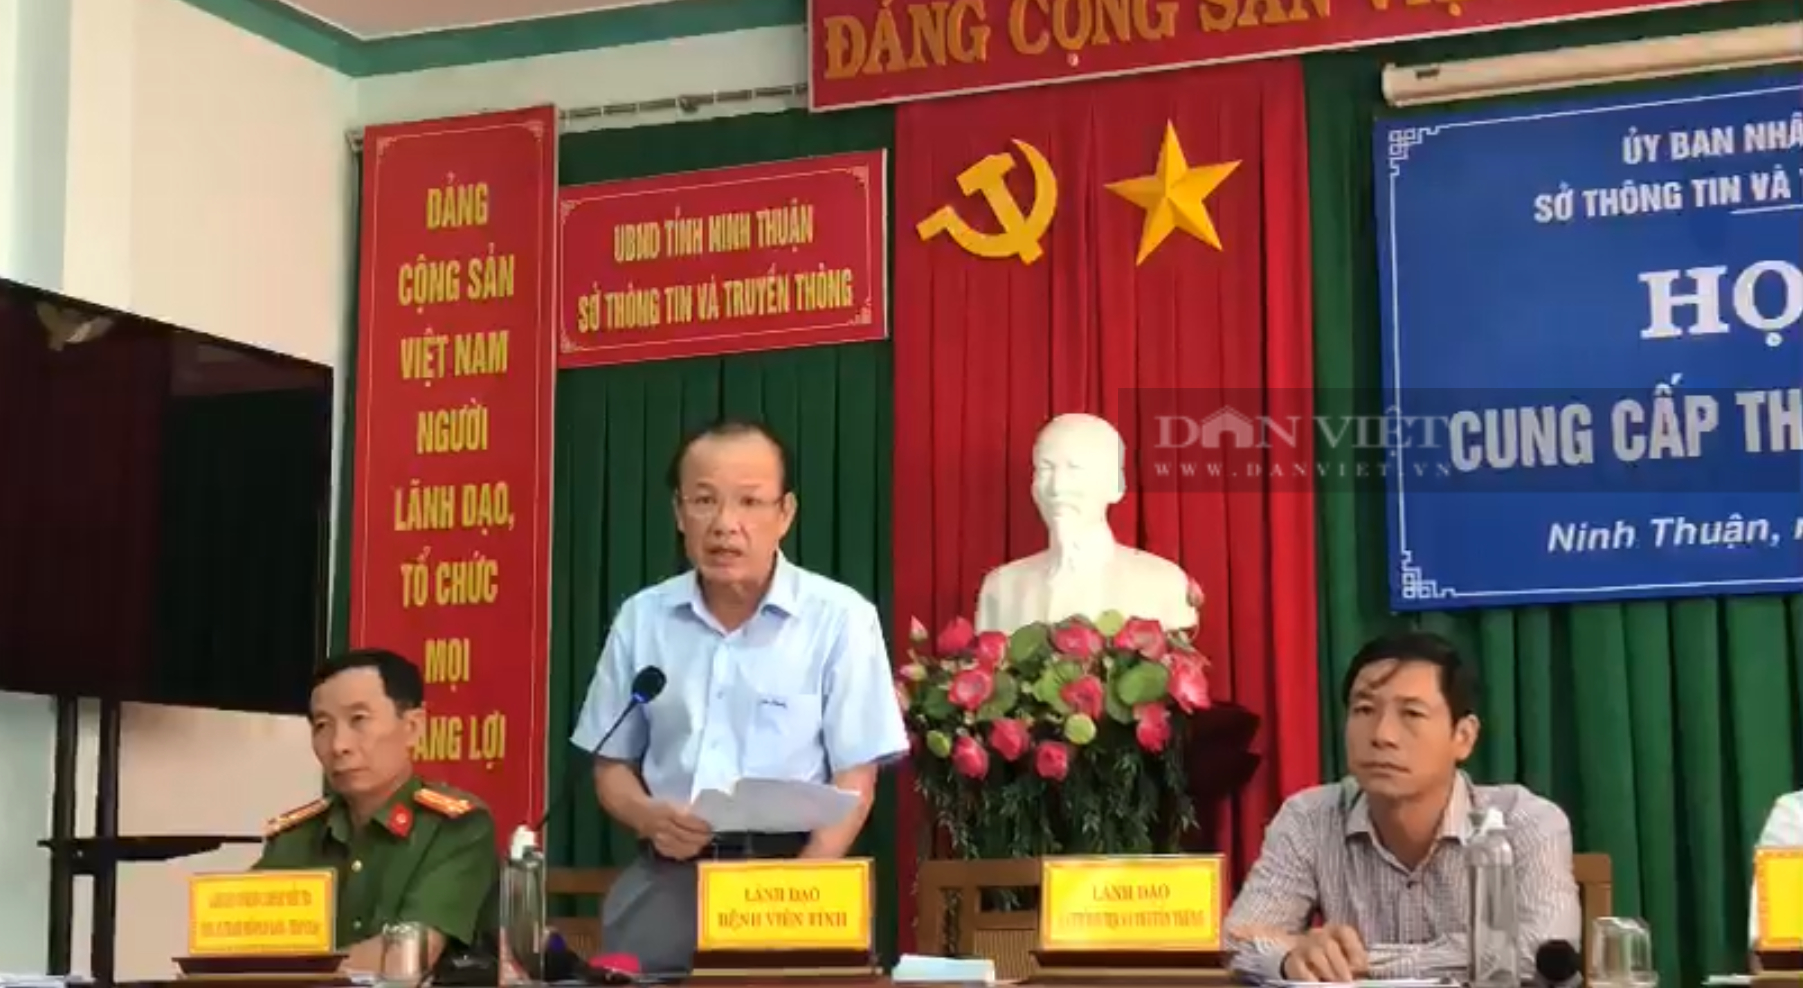 Cha nữ sinh lớp 12 tử vong ở Ninh Thuận tố giác bệnh viện tỉnh cố ý làm sai lệch hồ sơ vụ án - Ảnh 2.